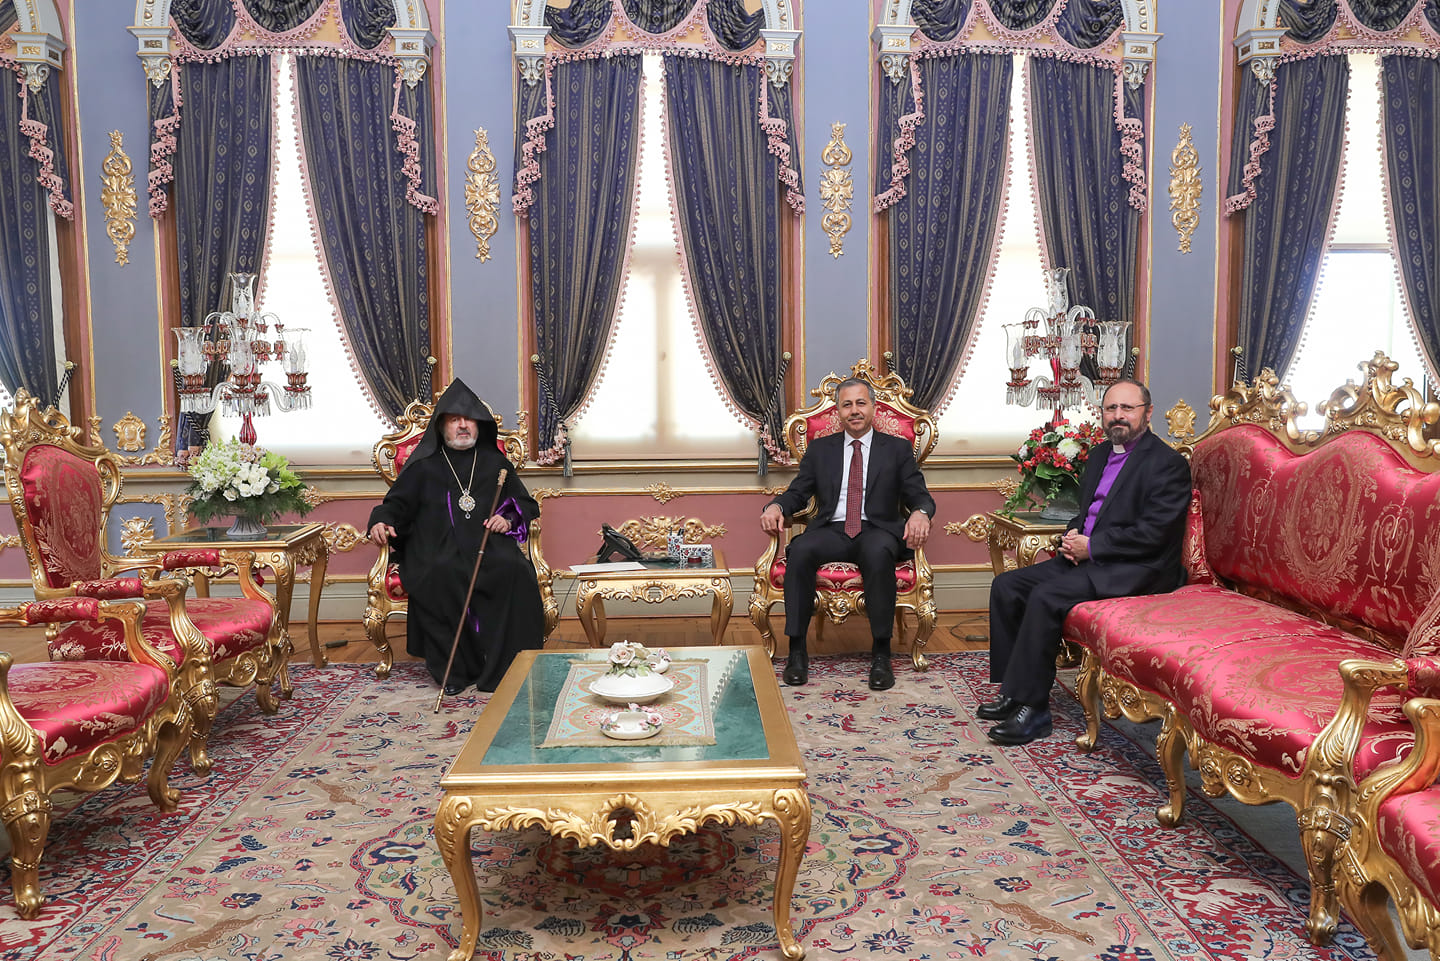 İstanbul Ermeni Patrikliği, Patrik Seçimi yapılabilmesi için İstanbul Valiliğe yazılı başvuruda bulundu